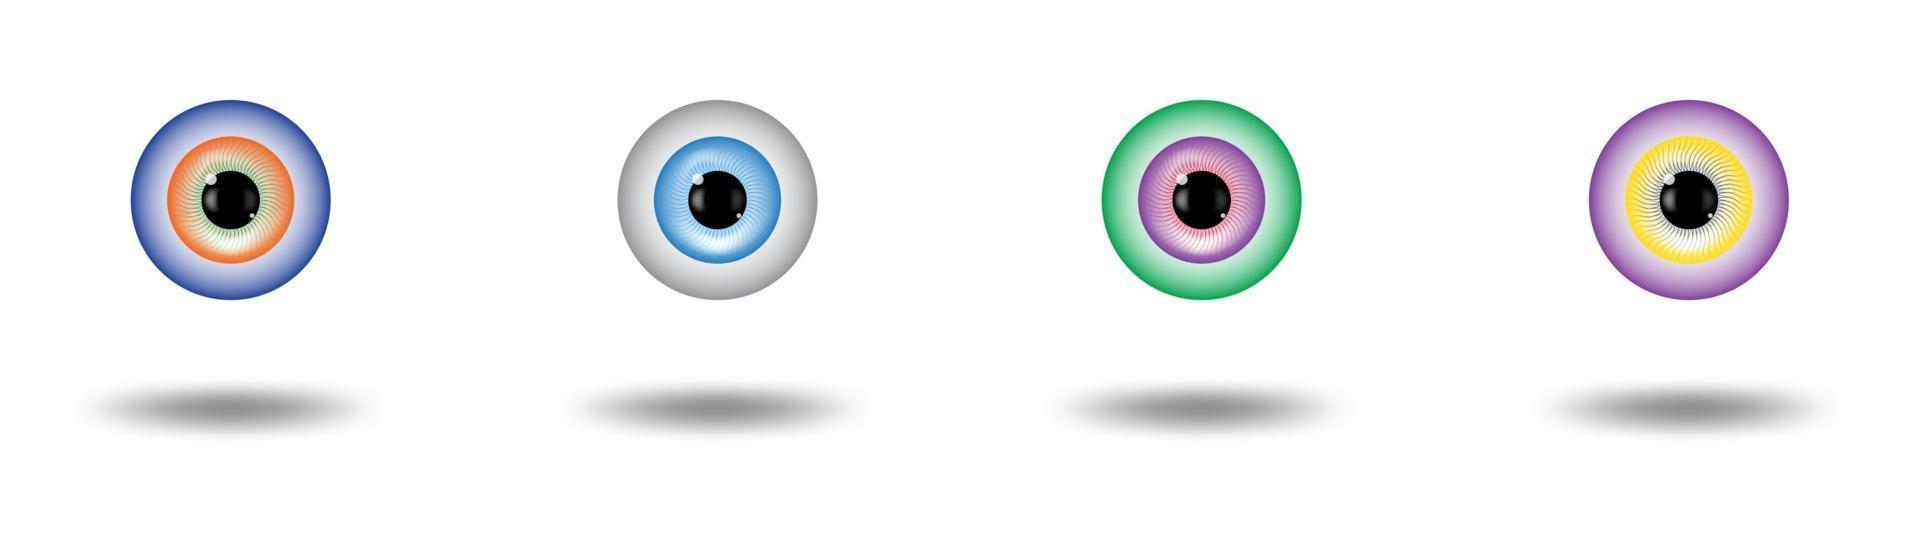 set di pupilla dell'iride del bulbo oculare vettore